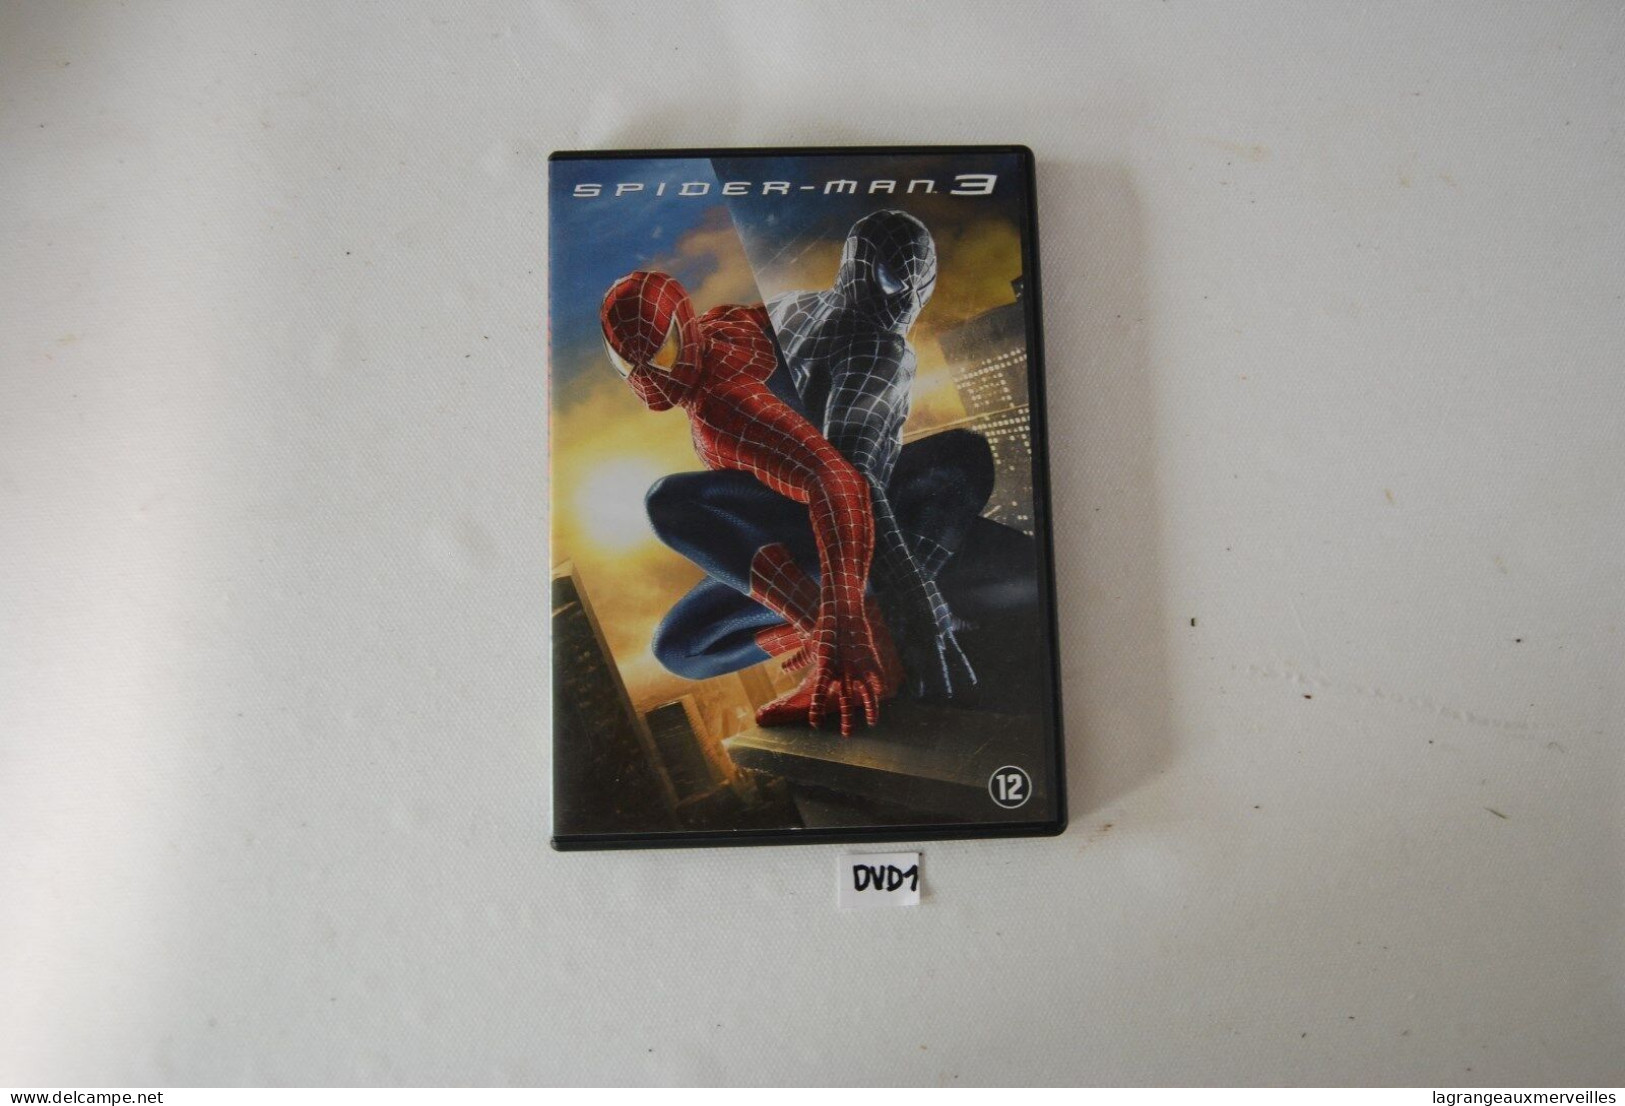 DVD 1 - SPIDER MAN 3 - Action, Adventure